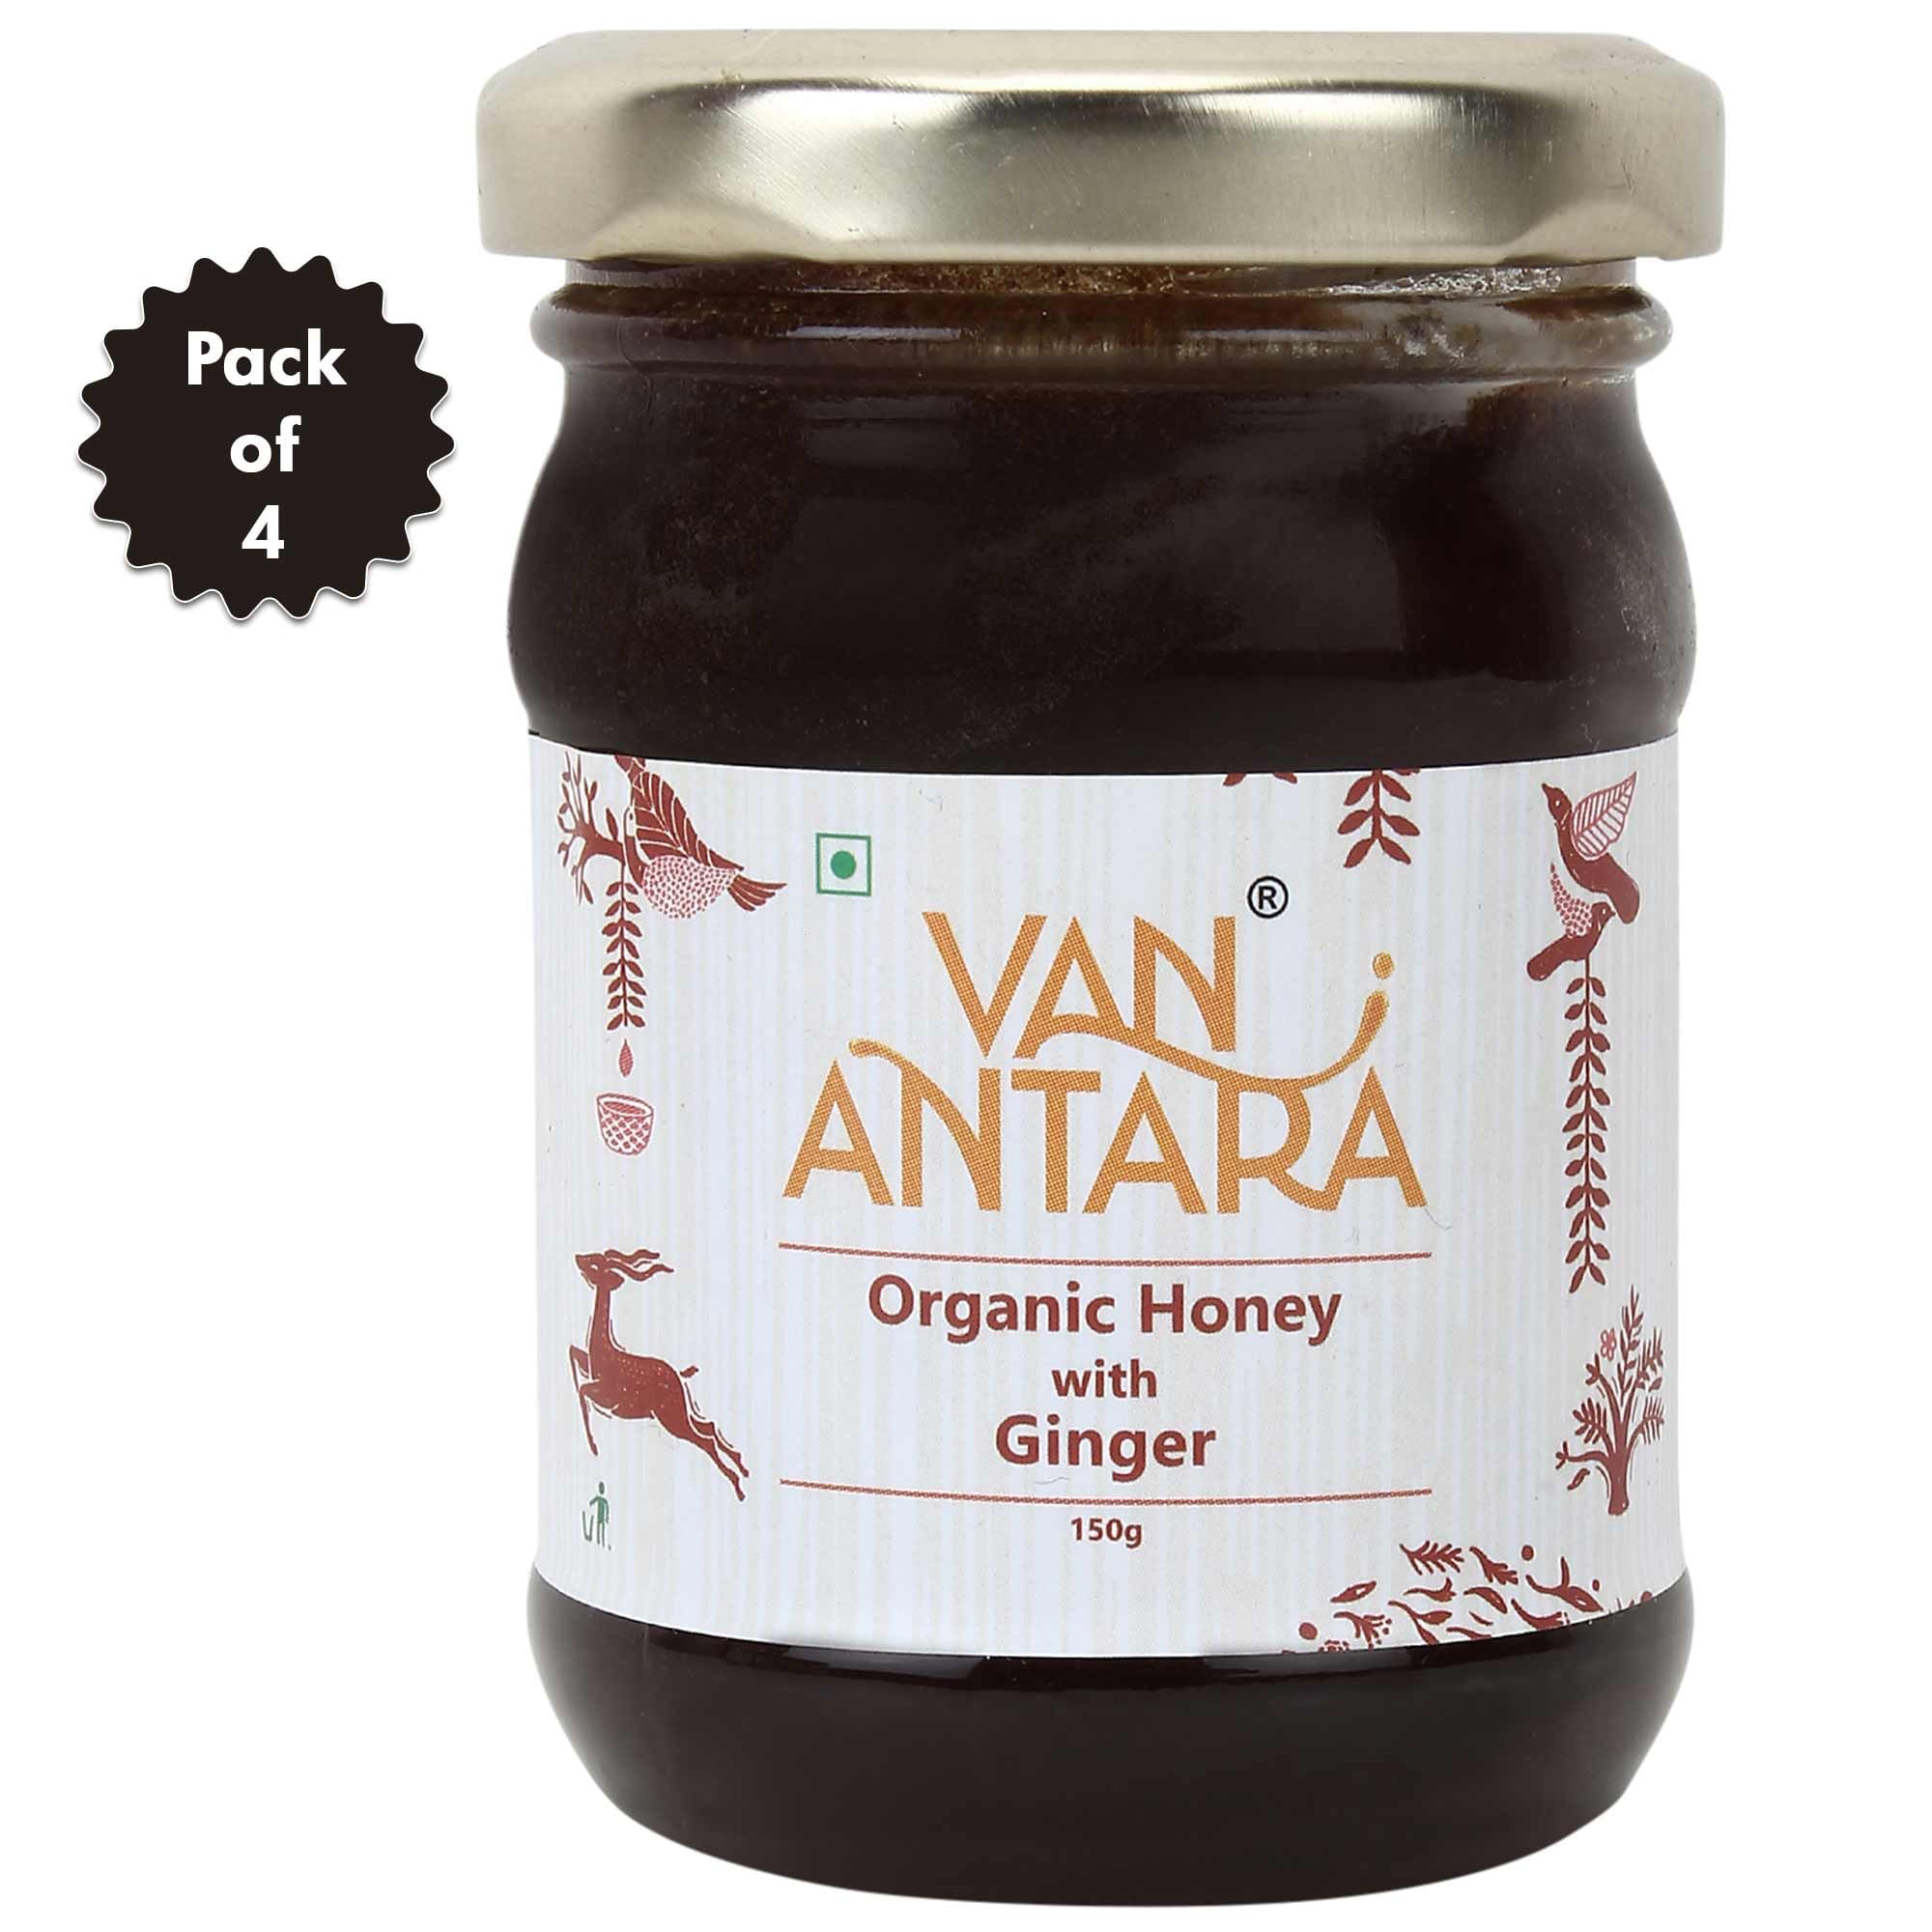 Vanantara Organic Honey with Ginger (150 gm) - Pack of 4